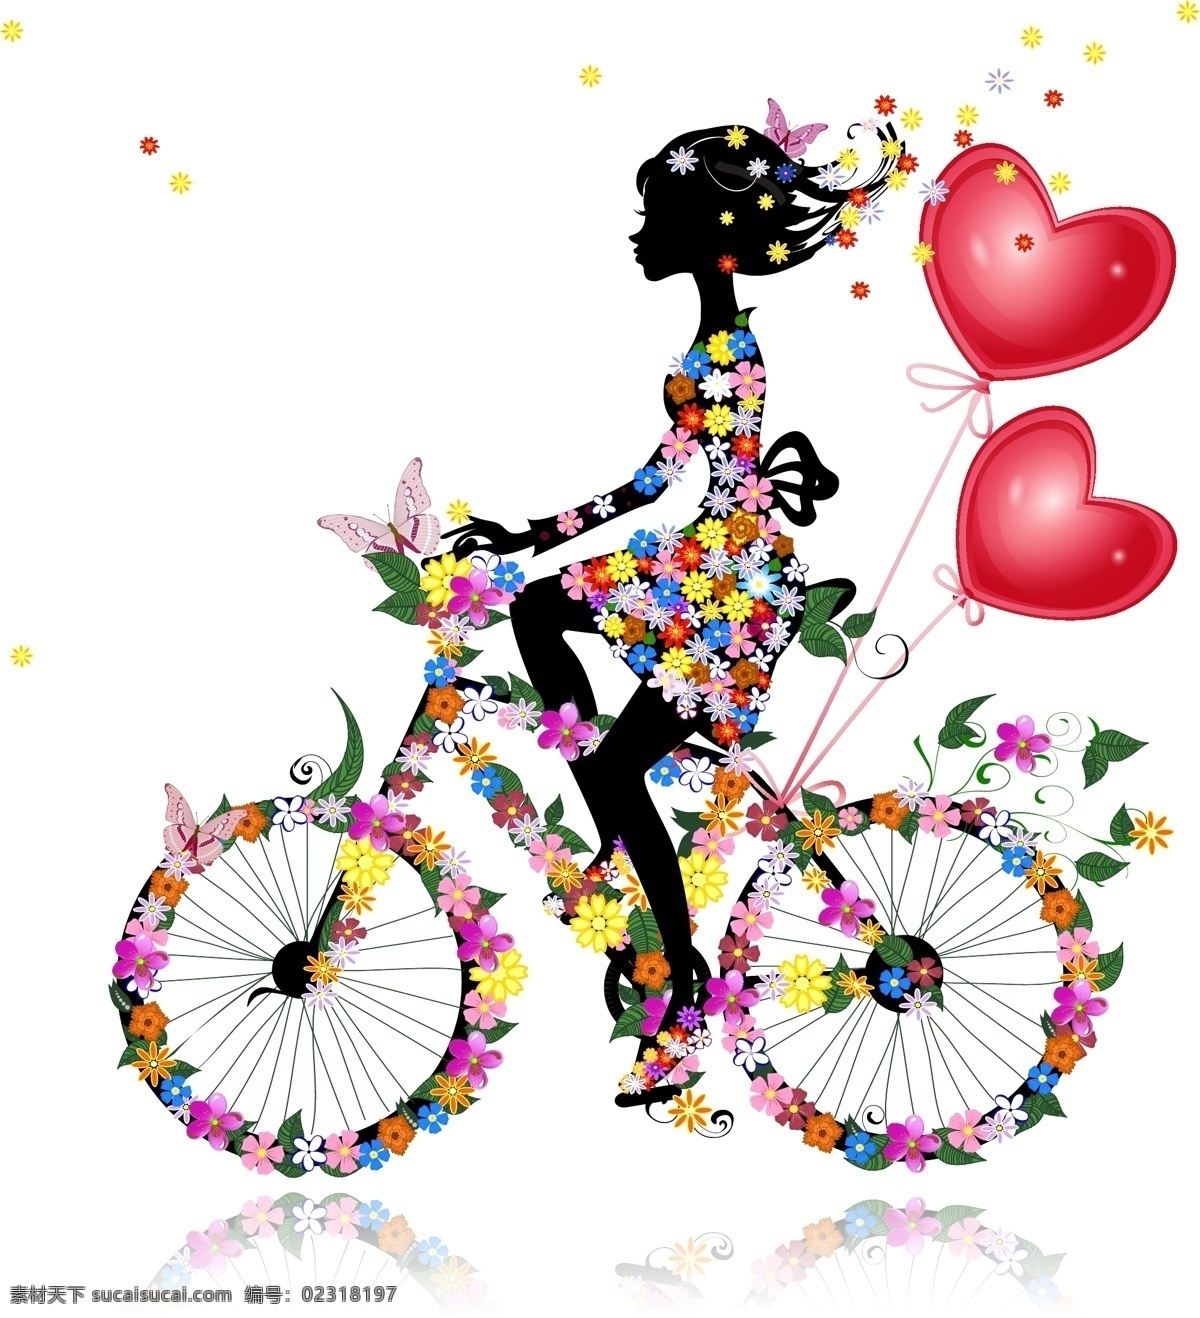 浪漫 花卉 美女 剪影 矢量 花朵 蝴蝶 人物 爱心 气球 自行车 植物 单车 动漫动画 动漫人物